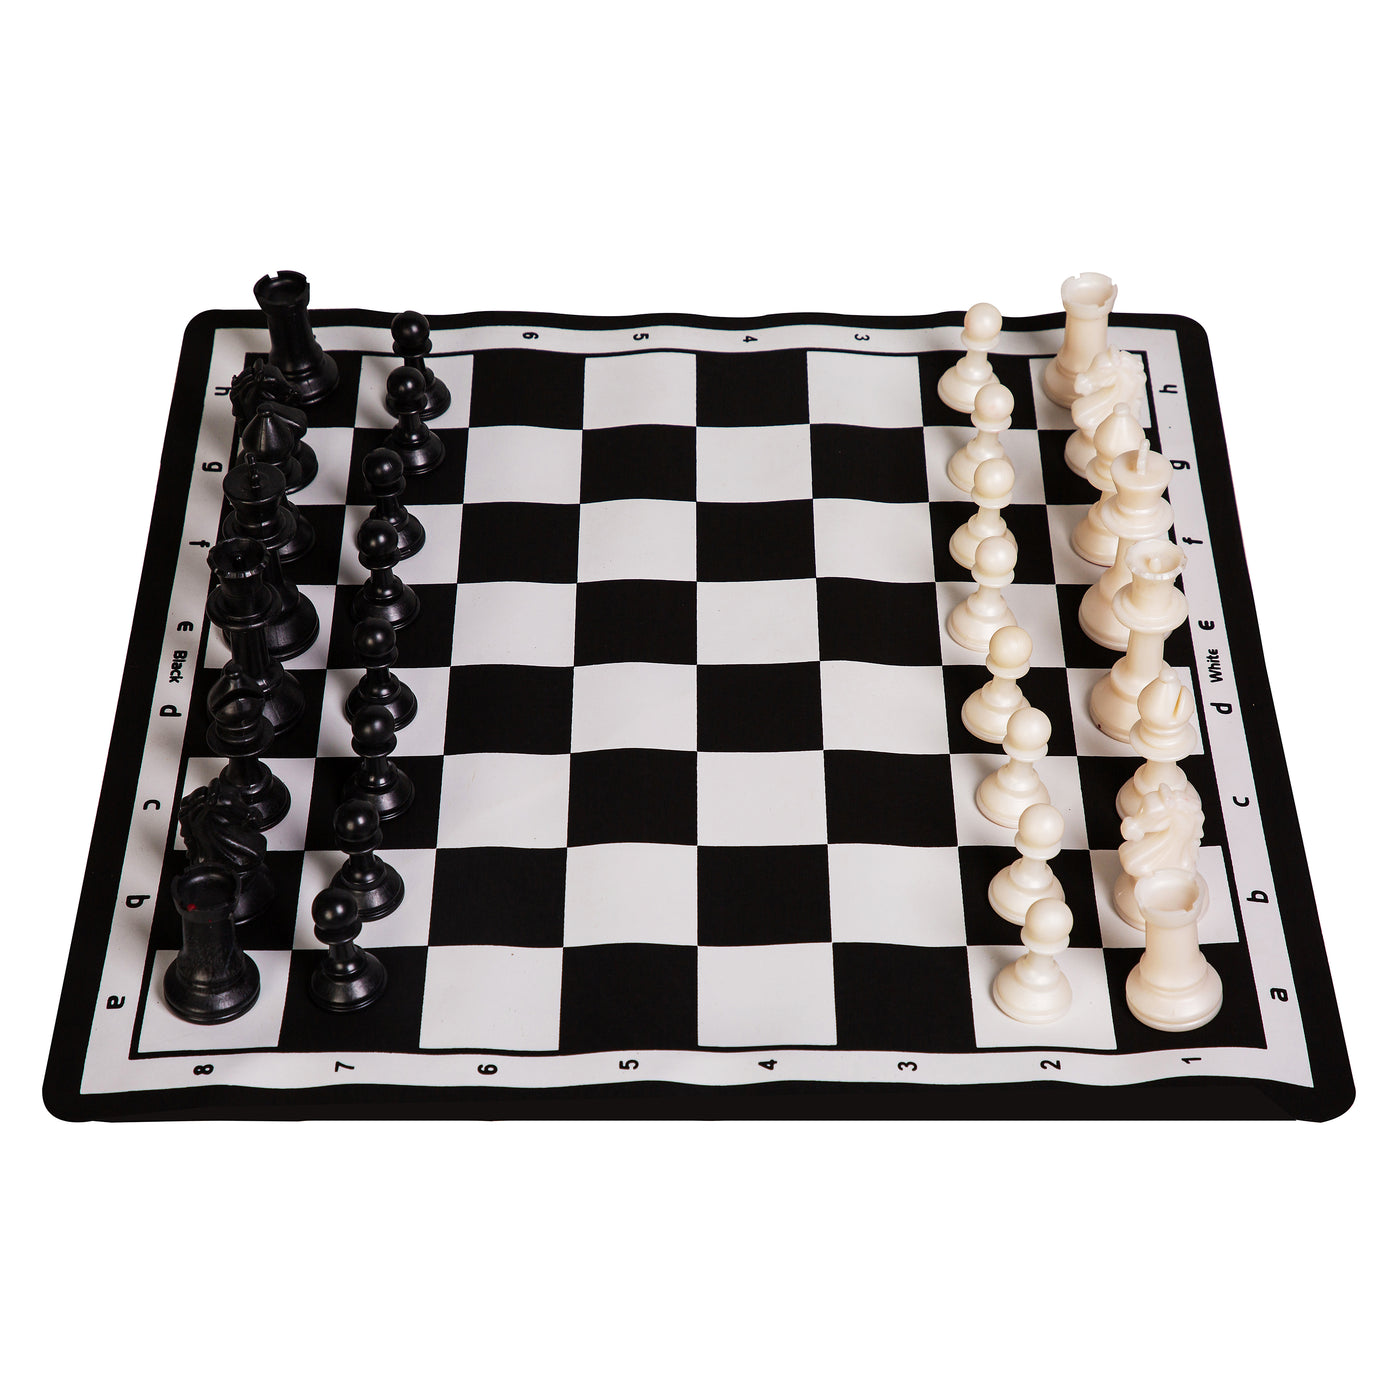 tenstar meastro champion chess board game black white